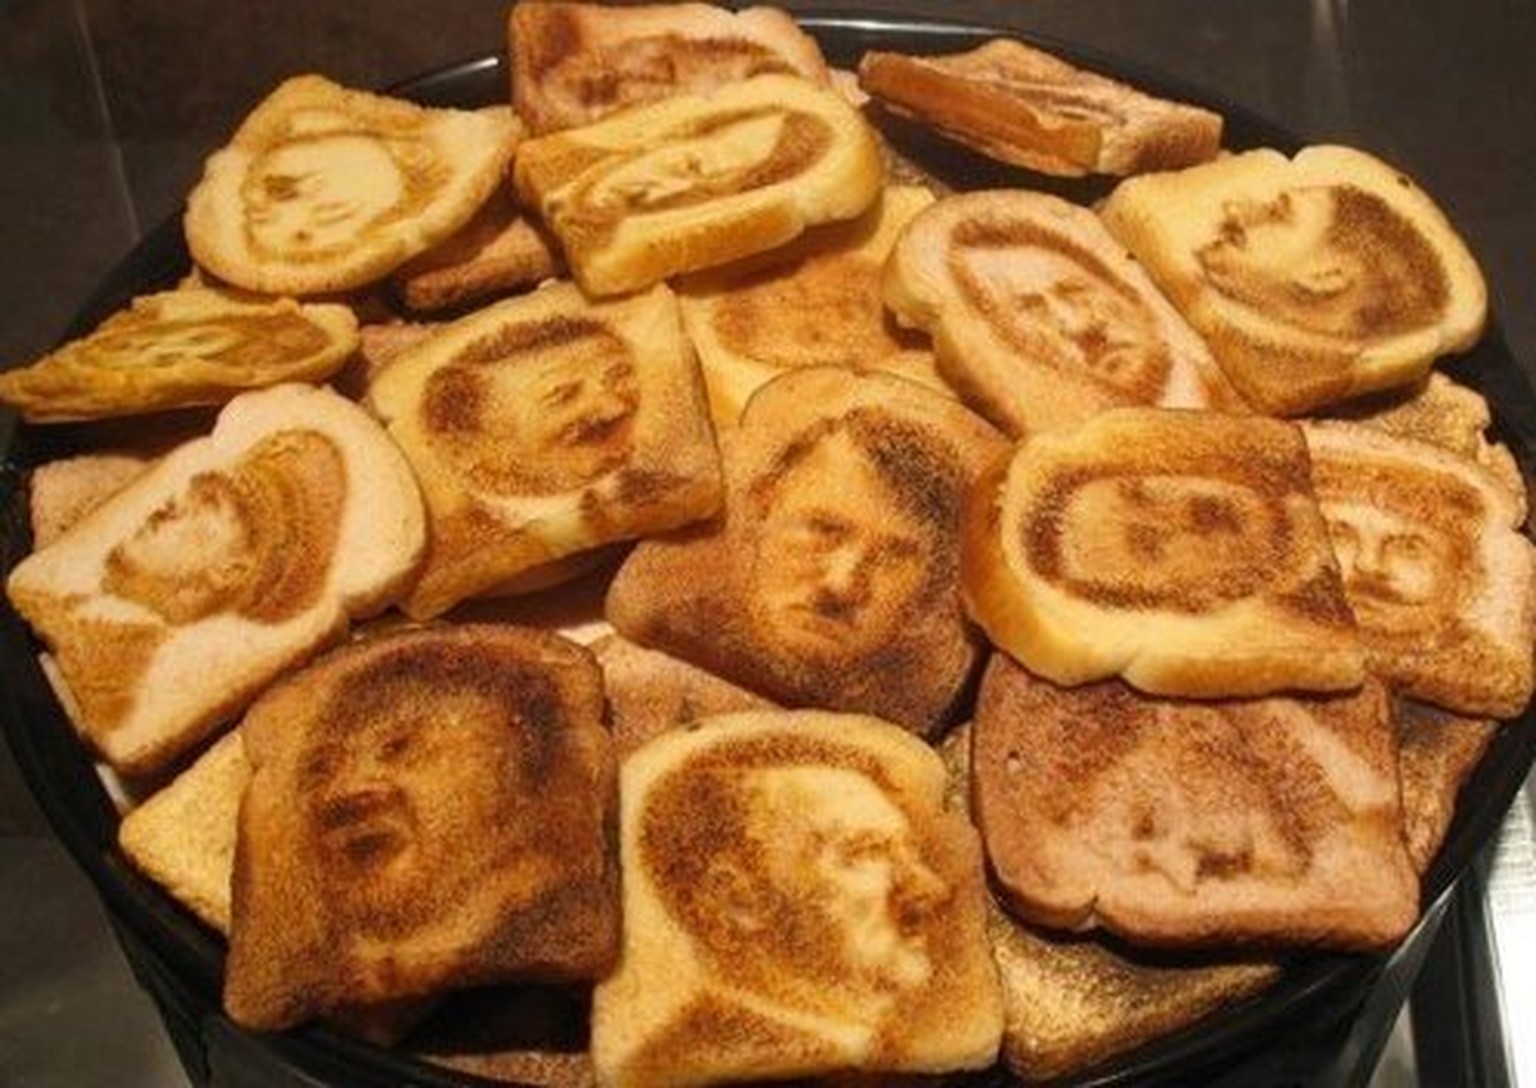 Hier hat jemand den Führer zum Fressen gern: Hitler-Toast.